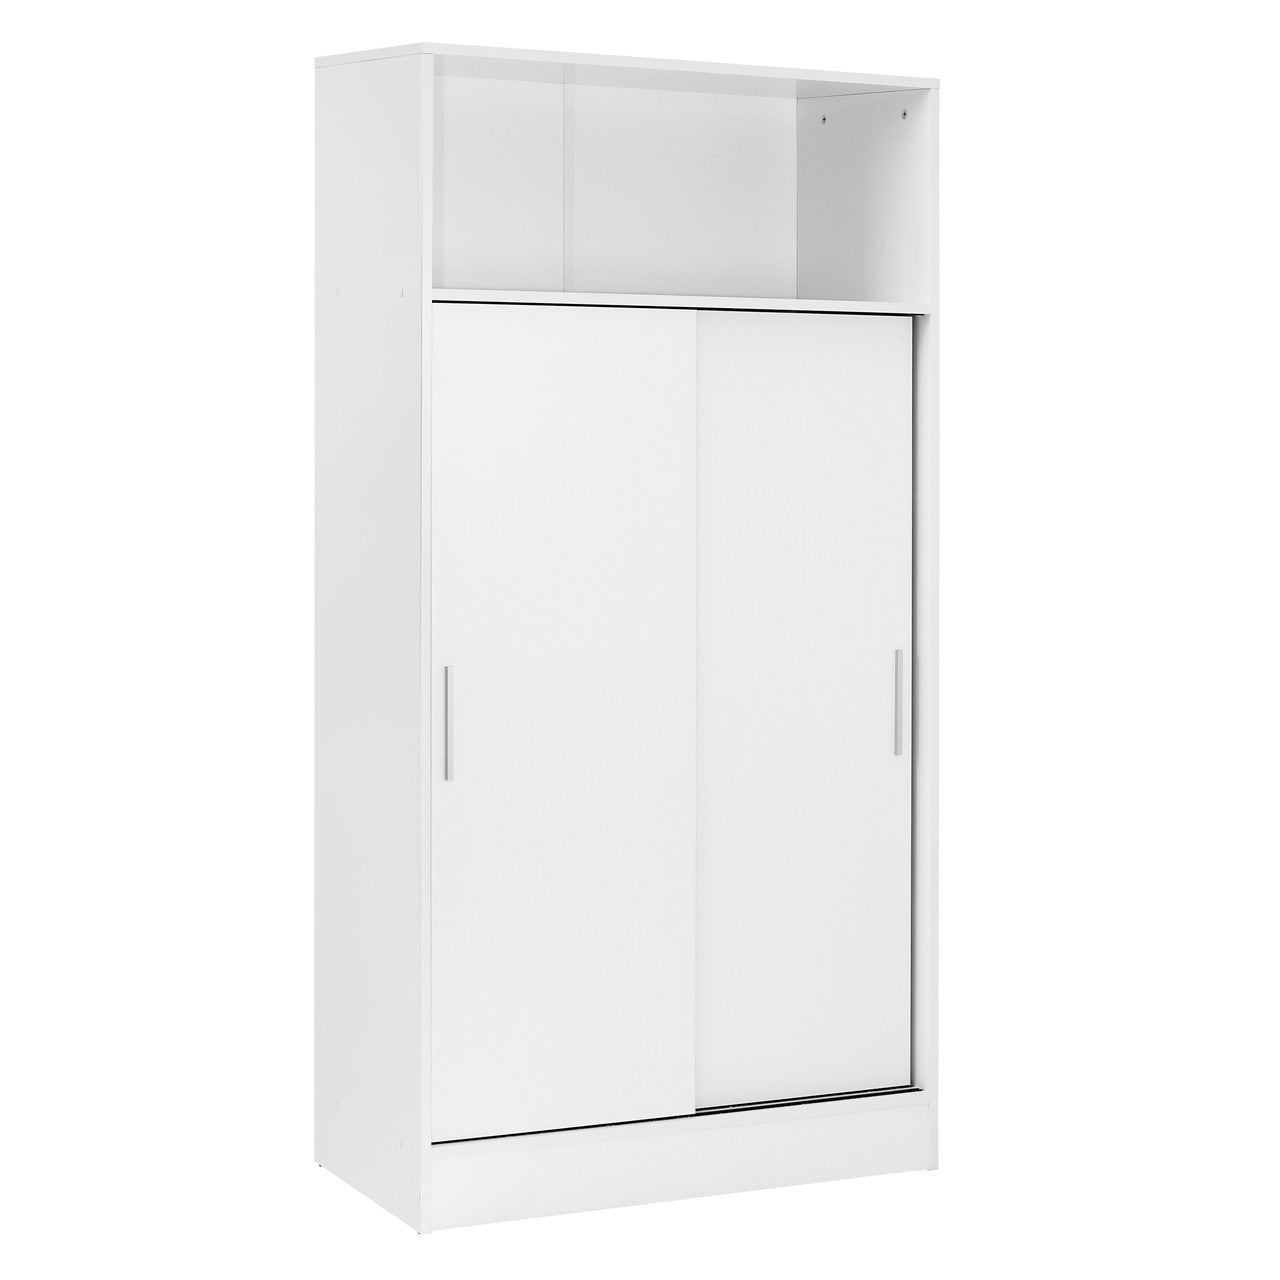 armario despensero multiusos cerrado con puertas correderas color blanco de buyqualia